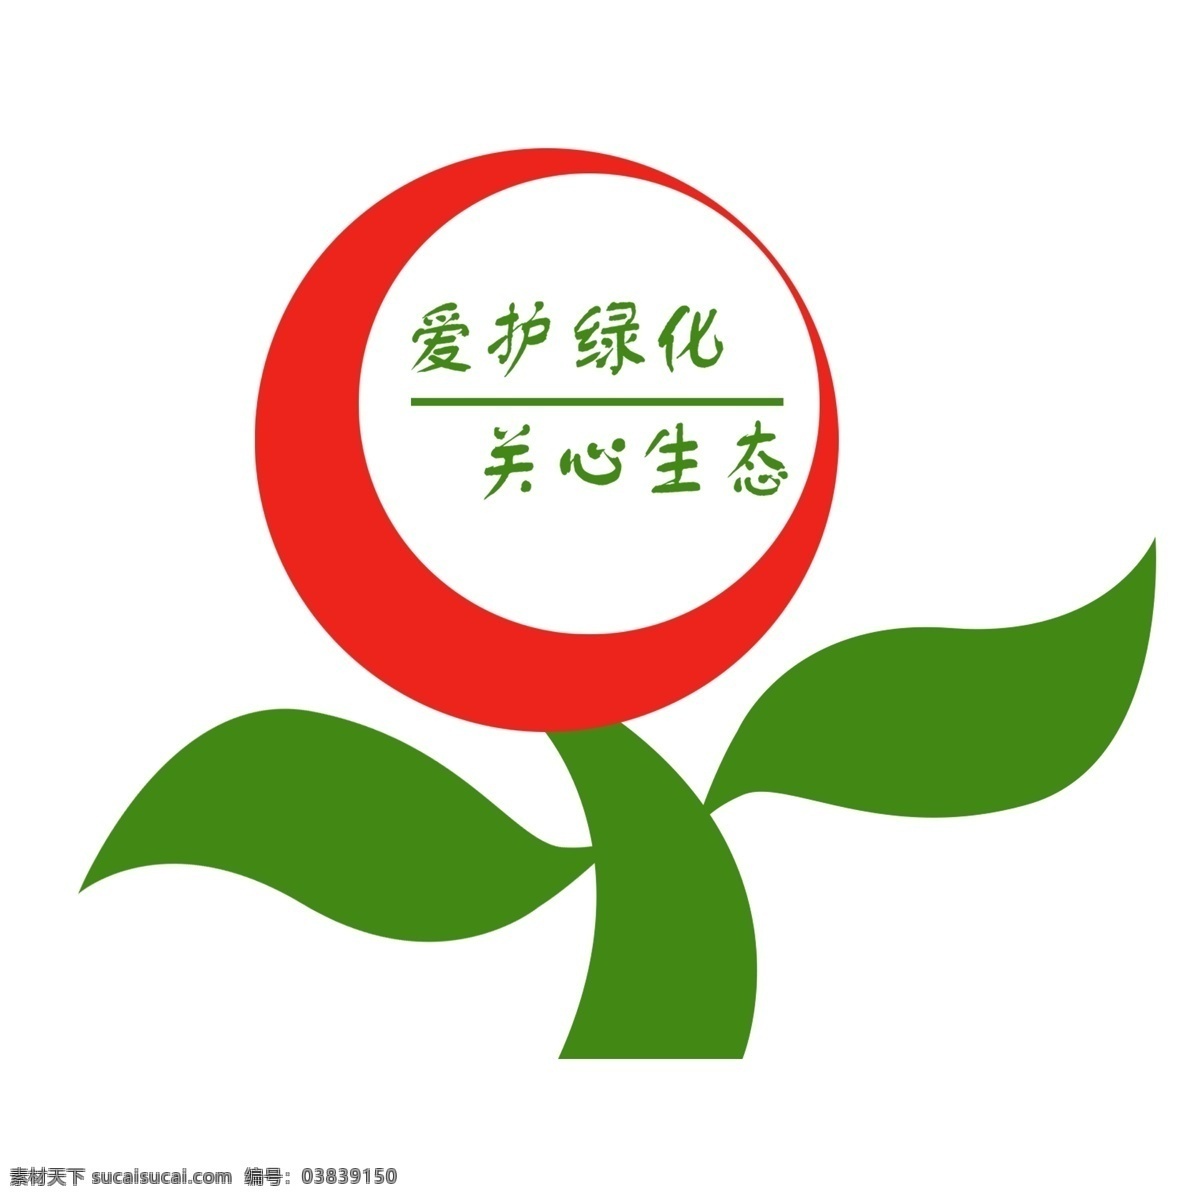 小花 型 爱护 花草 标识 牌 透明 底 红色 绿色 导语 艺术字 绿色的 警示牌 卡通 简笔 白色 标牌 环保 爱护花草 环境保护